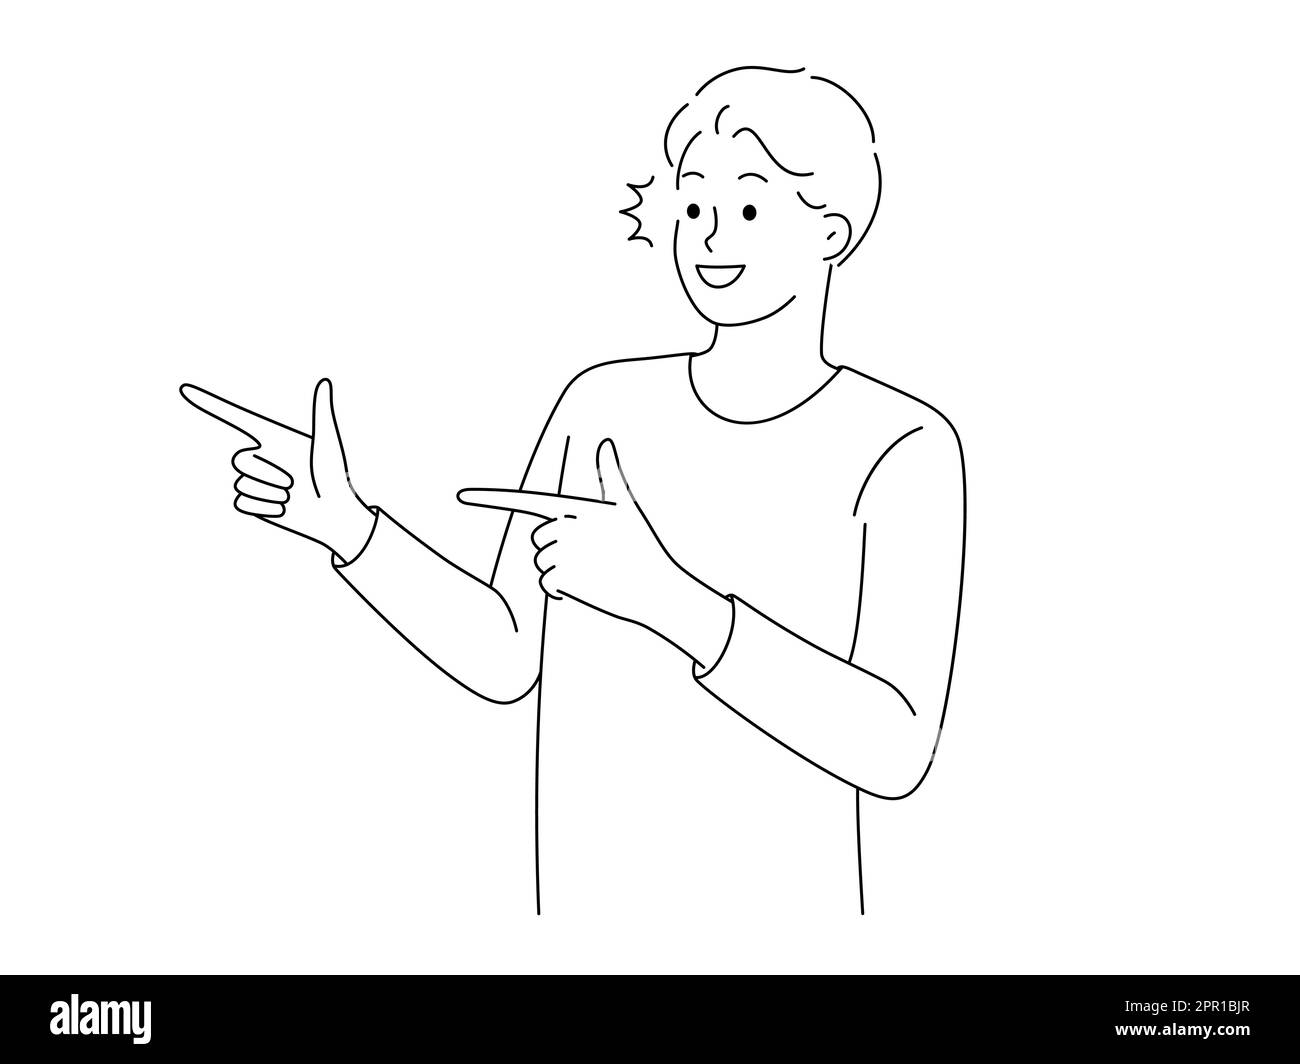 Un niño con una cartera apunta con su dedo índice a su anuncio